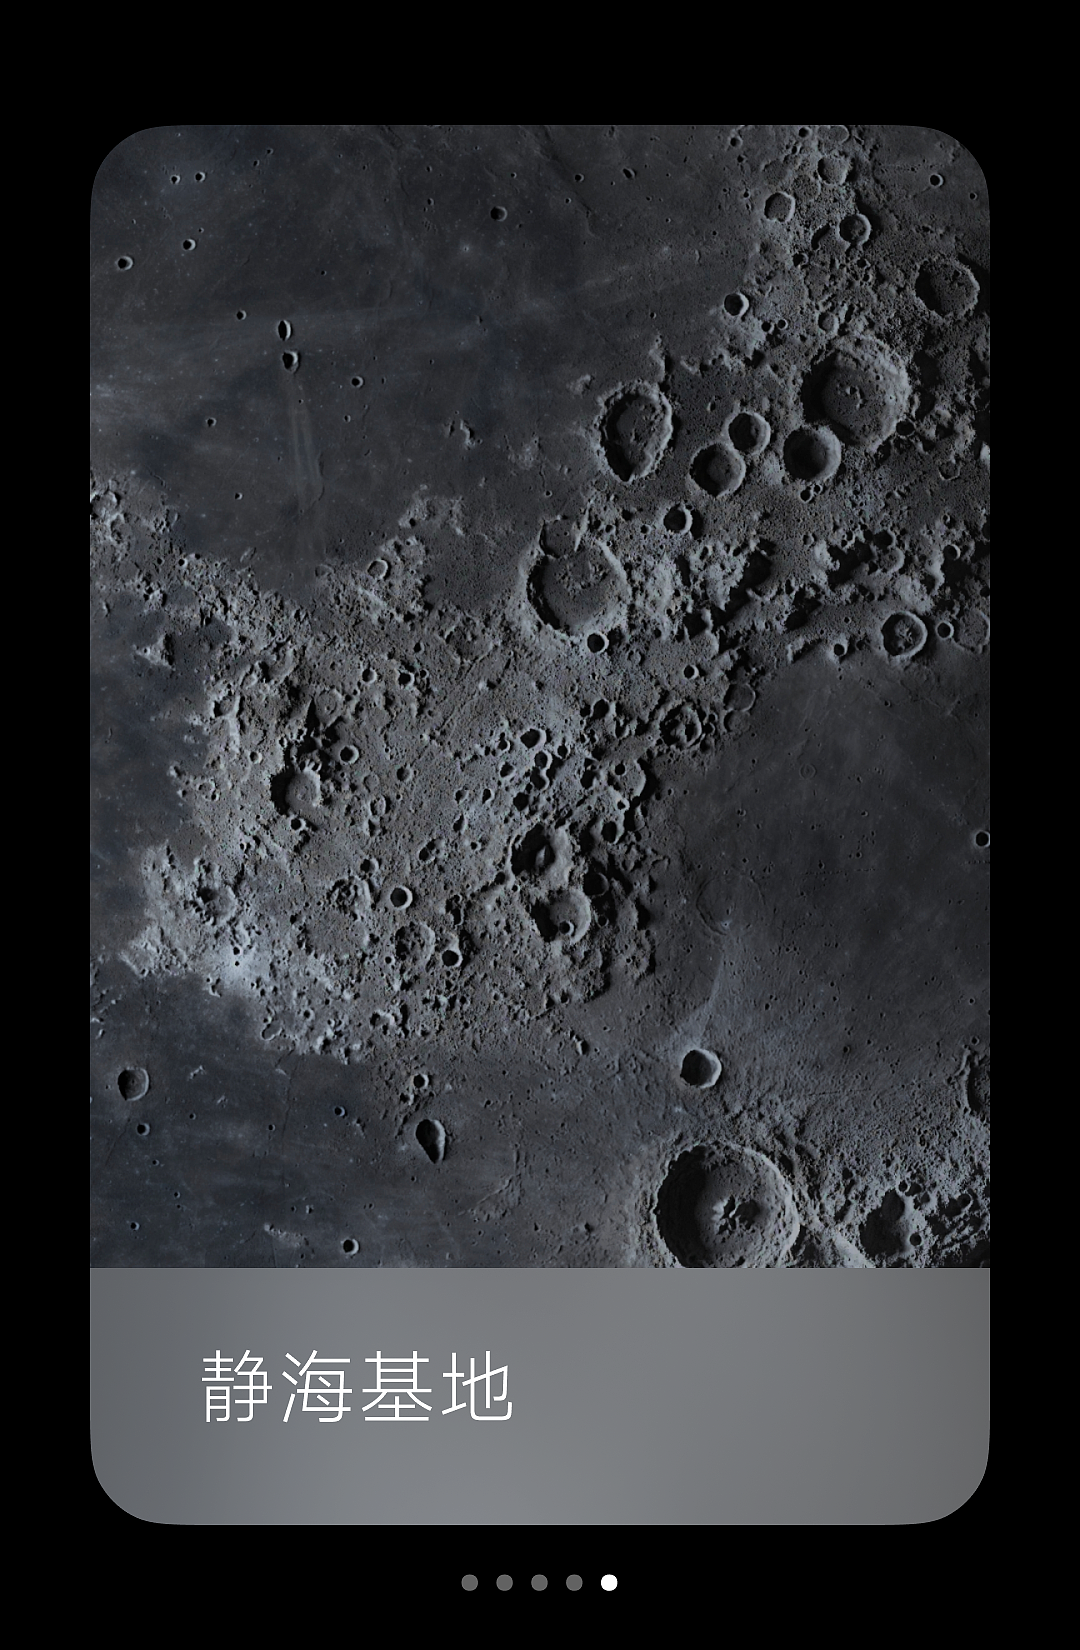 小米超级壁纸新增“月球”主题：基于澎湃 OS 图形子系统，内存占用大幅降低 - 7